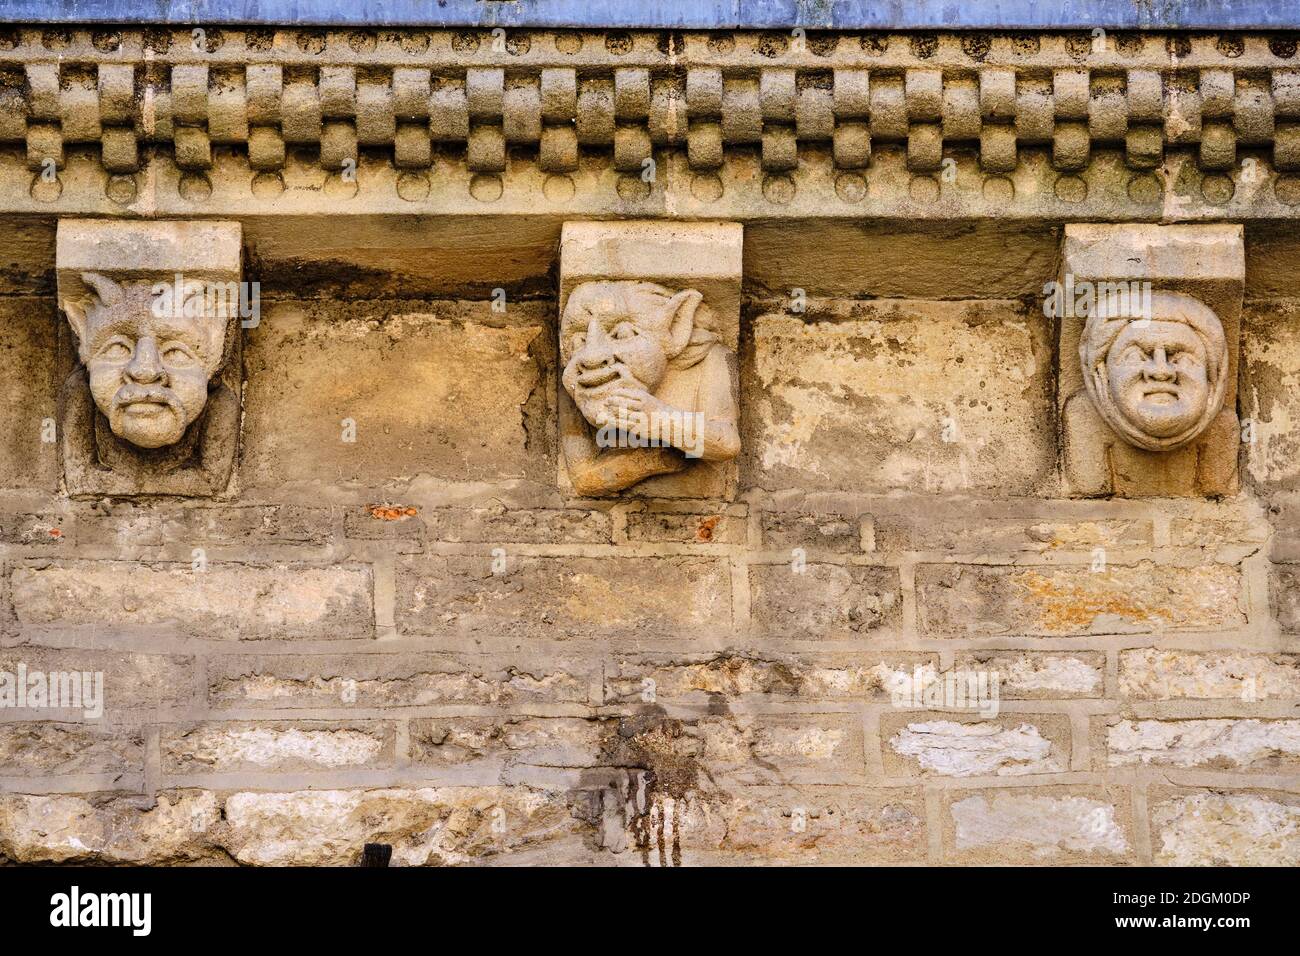 Frankreich, Lot (46), Cahors, Kathedrale Saint-Etienne, von der UNESCO zum Weltkulturerbe erklärt Lot Tal, Quercy Stockfoto